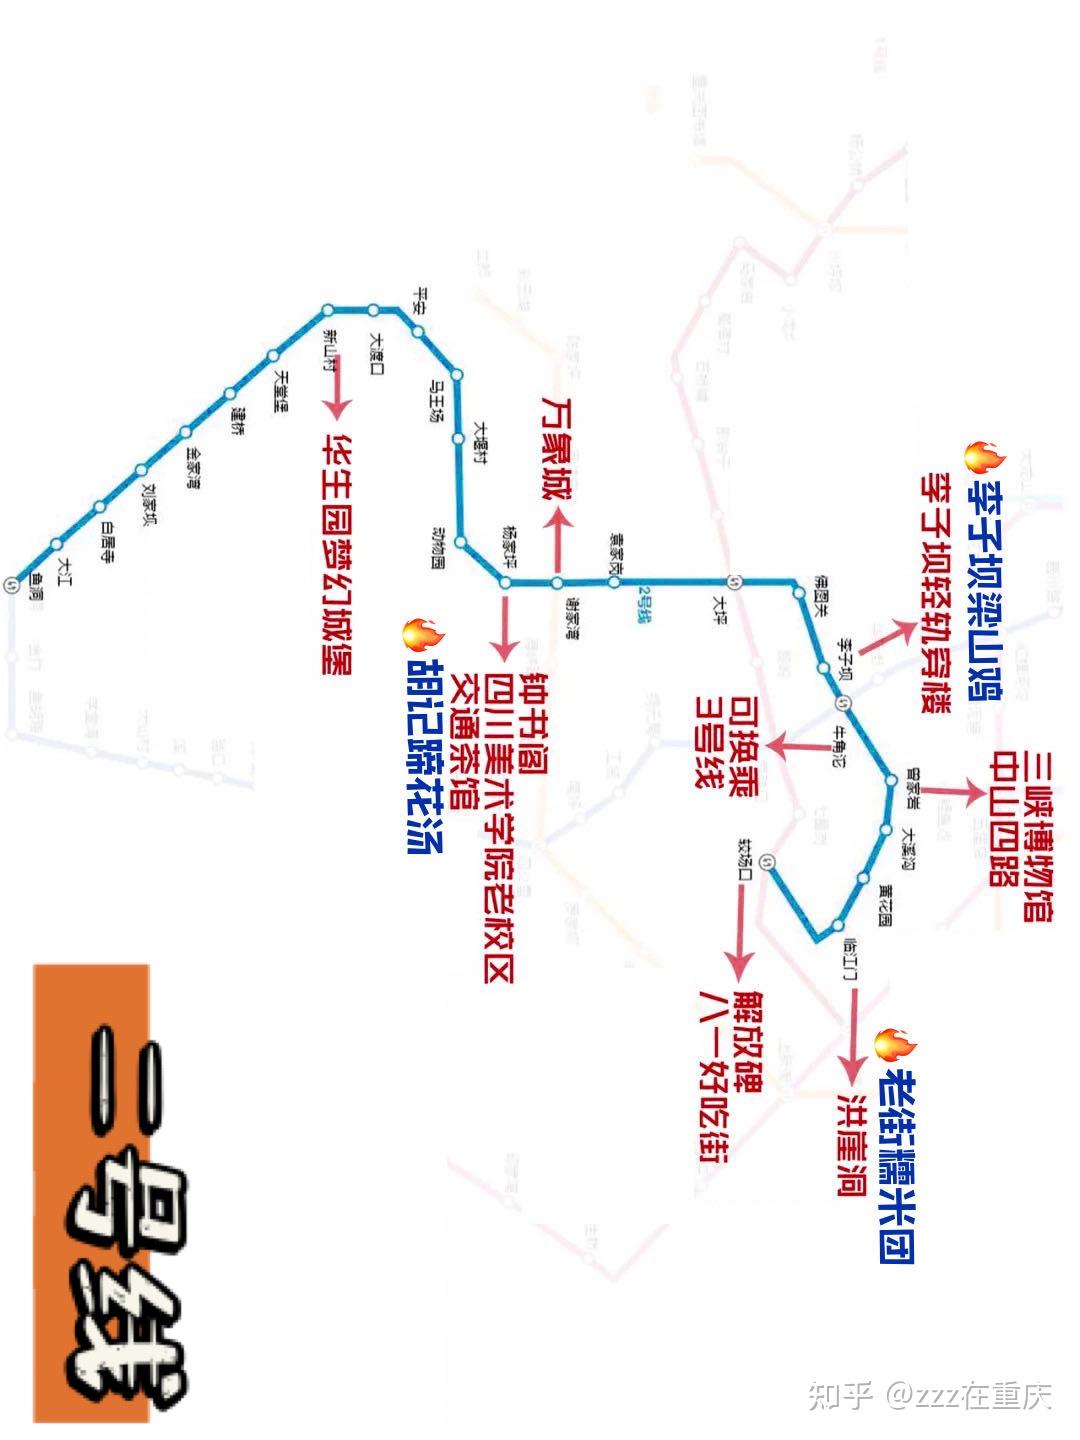 重庆旅游地图_重庆旅游景点地图_重庆旅游每周一图-重庆本地宝